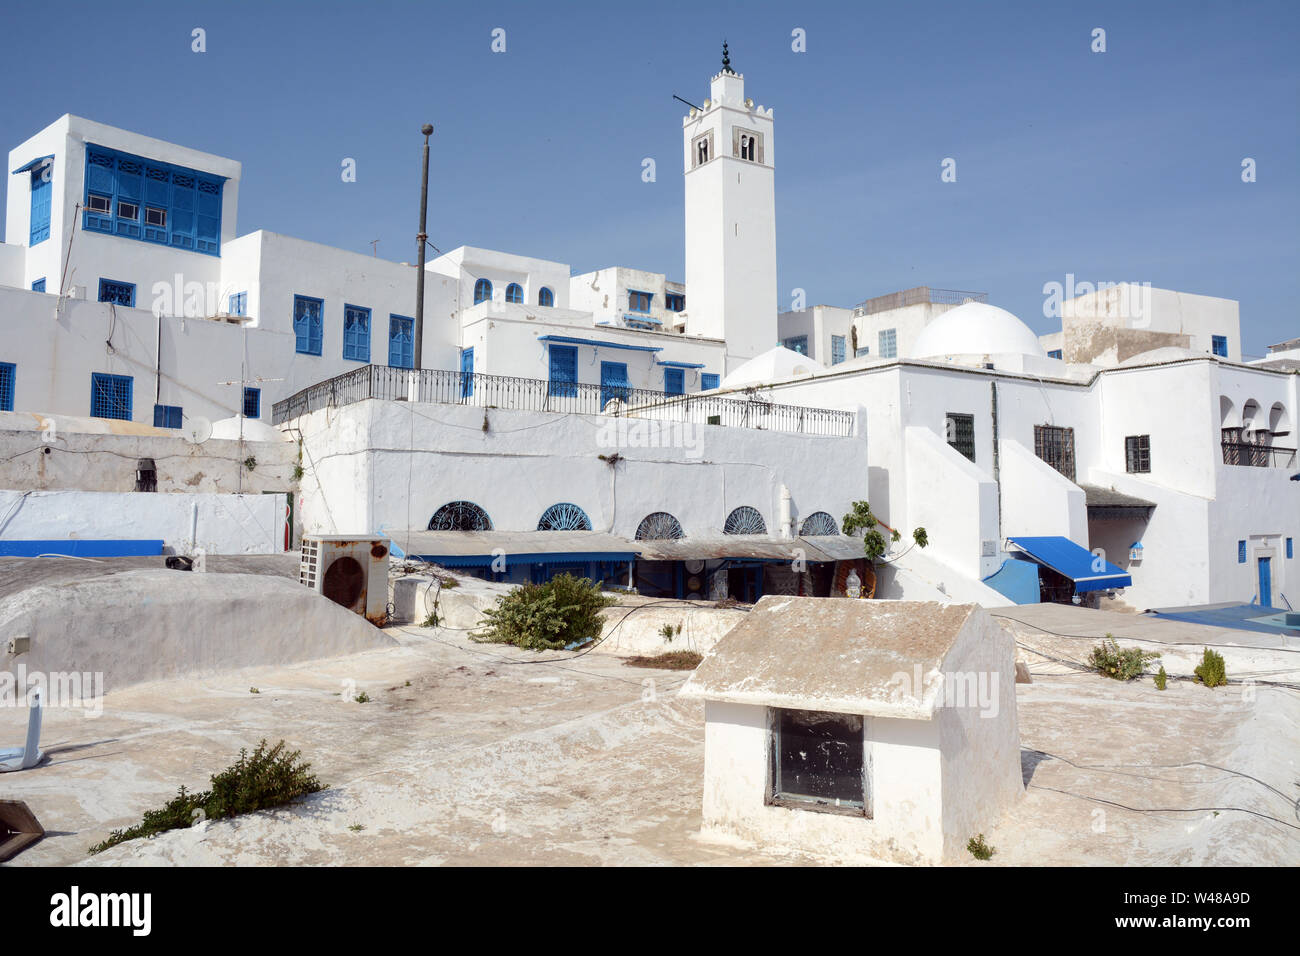 Tradizionale imbiancato minareto della moschea, e case residenziali nella medina della città turistica e sobborgo di Sidi Bou Said, Tunisi, Tunisia. Foto Stock